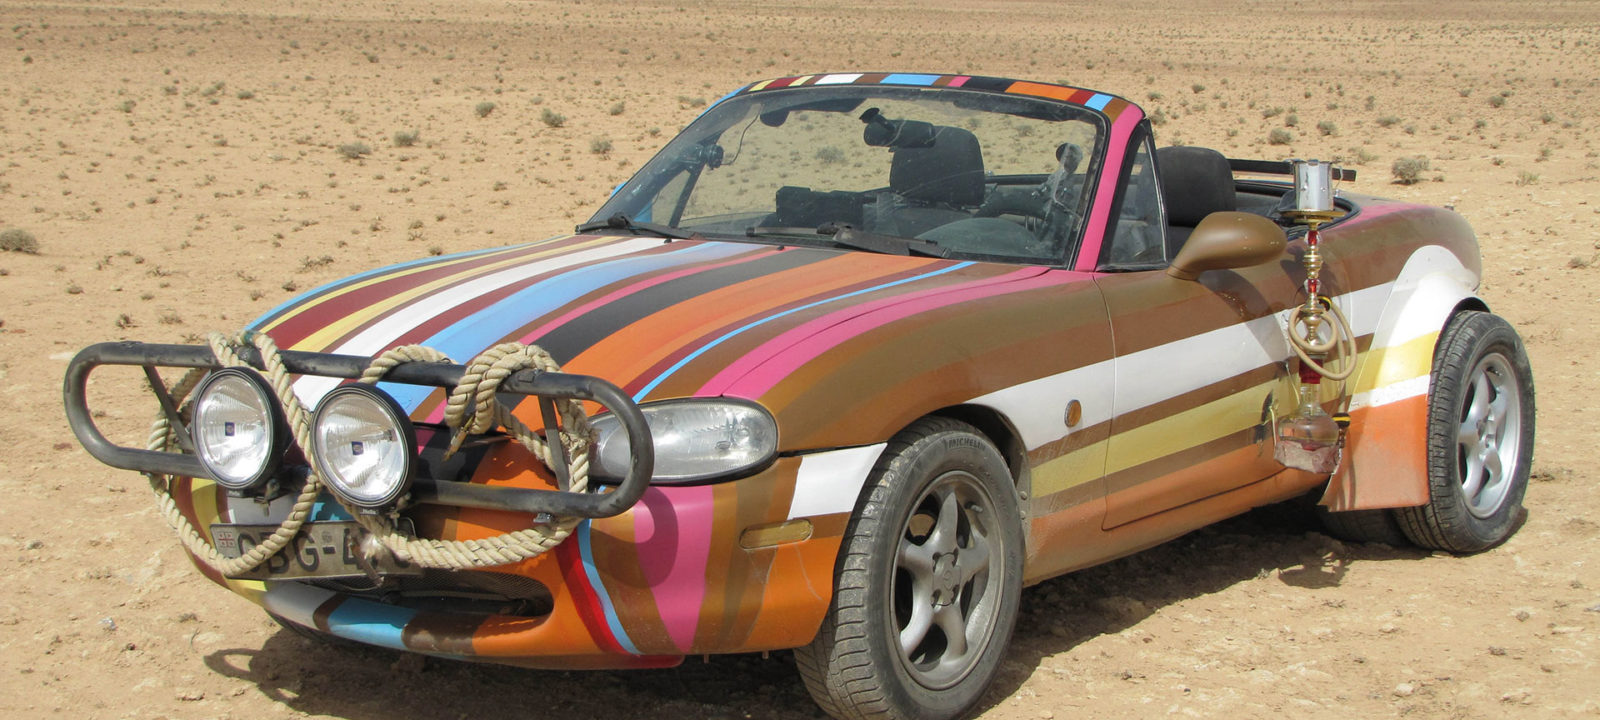 Middle East Special | Top Gear Wiki Fandom